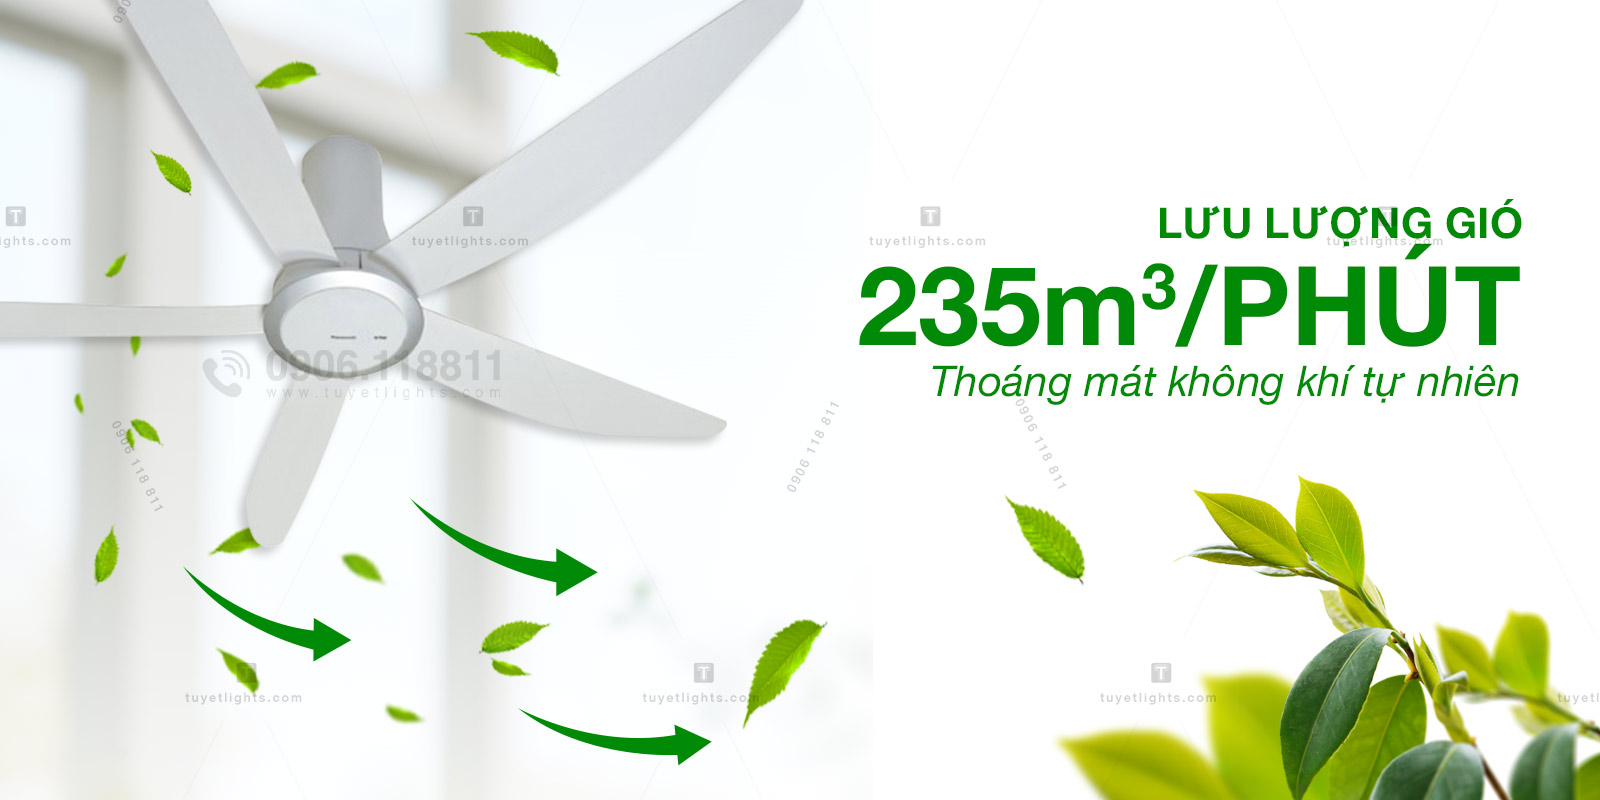 Lưu lượng gió 235m³/phút